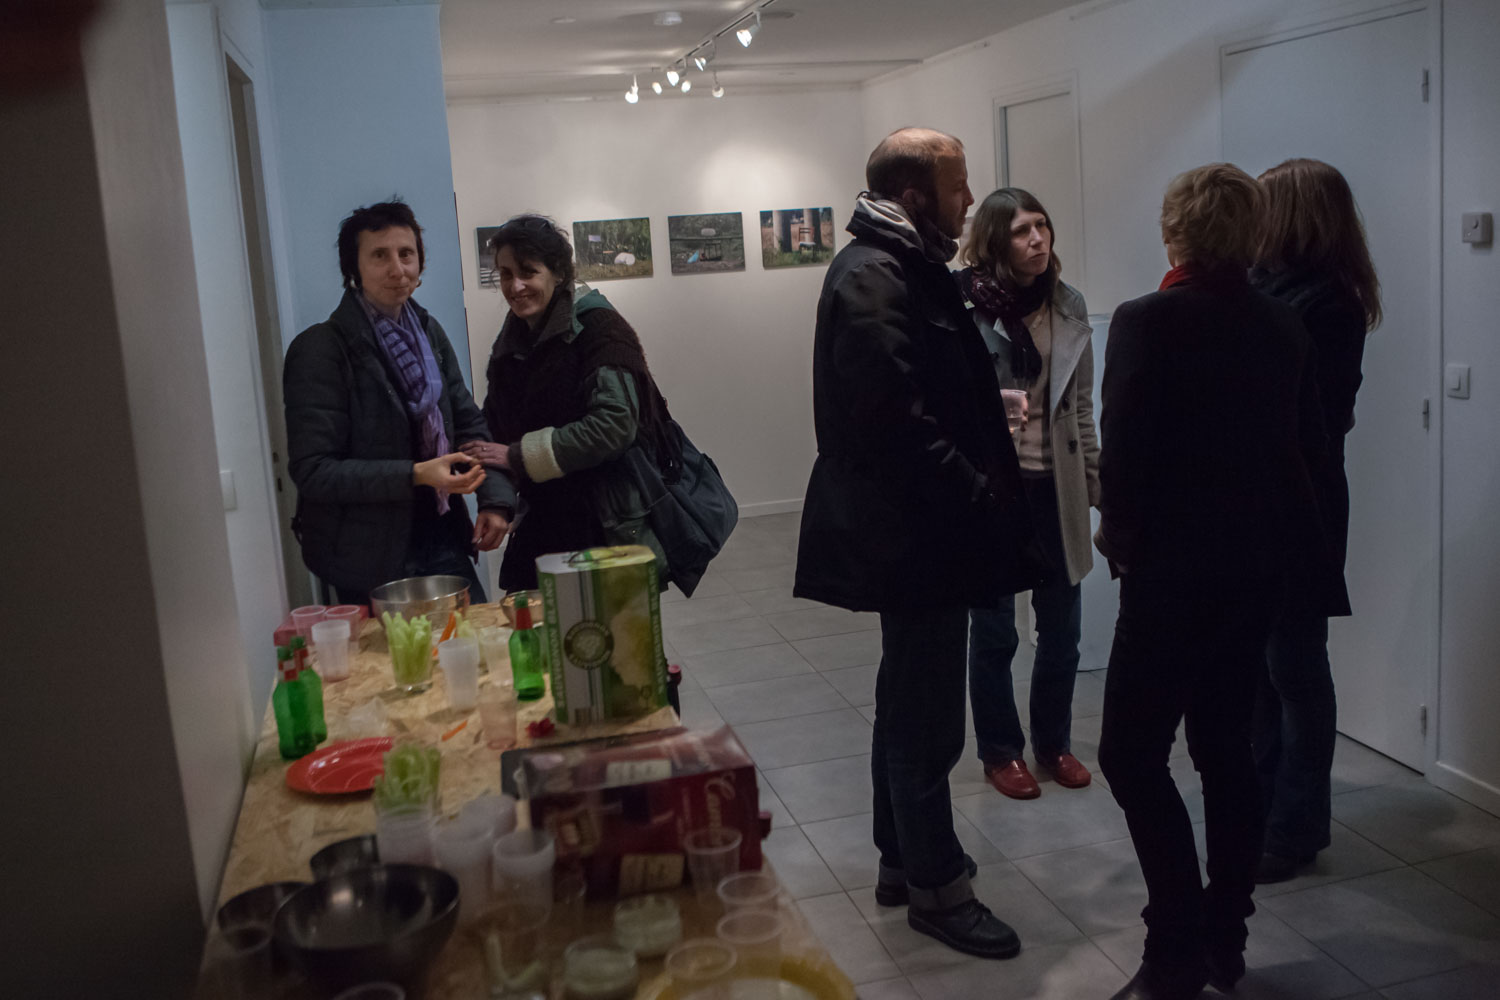 Vernissage de l'exposition photo à laquelle je participe "Trace in times", vendredi 20 novembre 2015 à la galerie des AAB, 1 rue Picabia, 75020 Paris